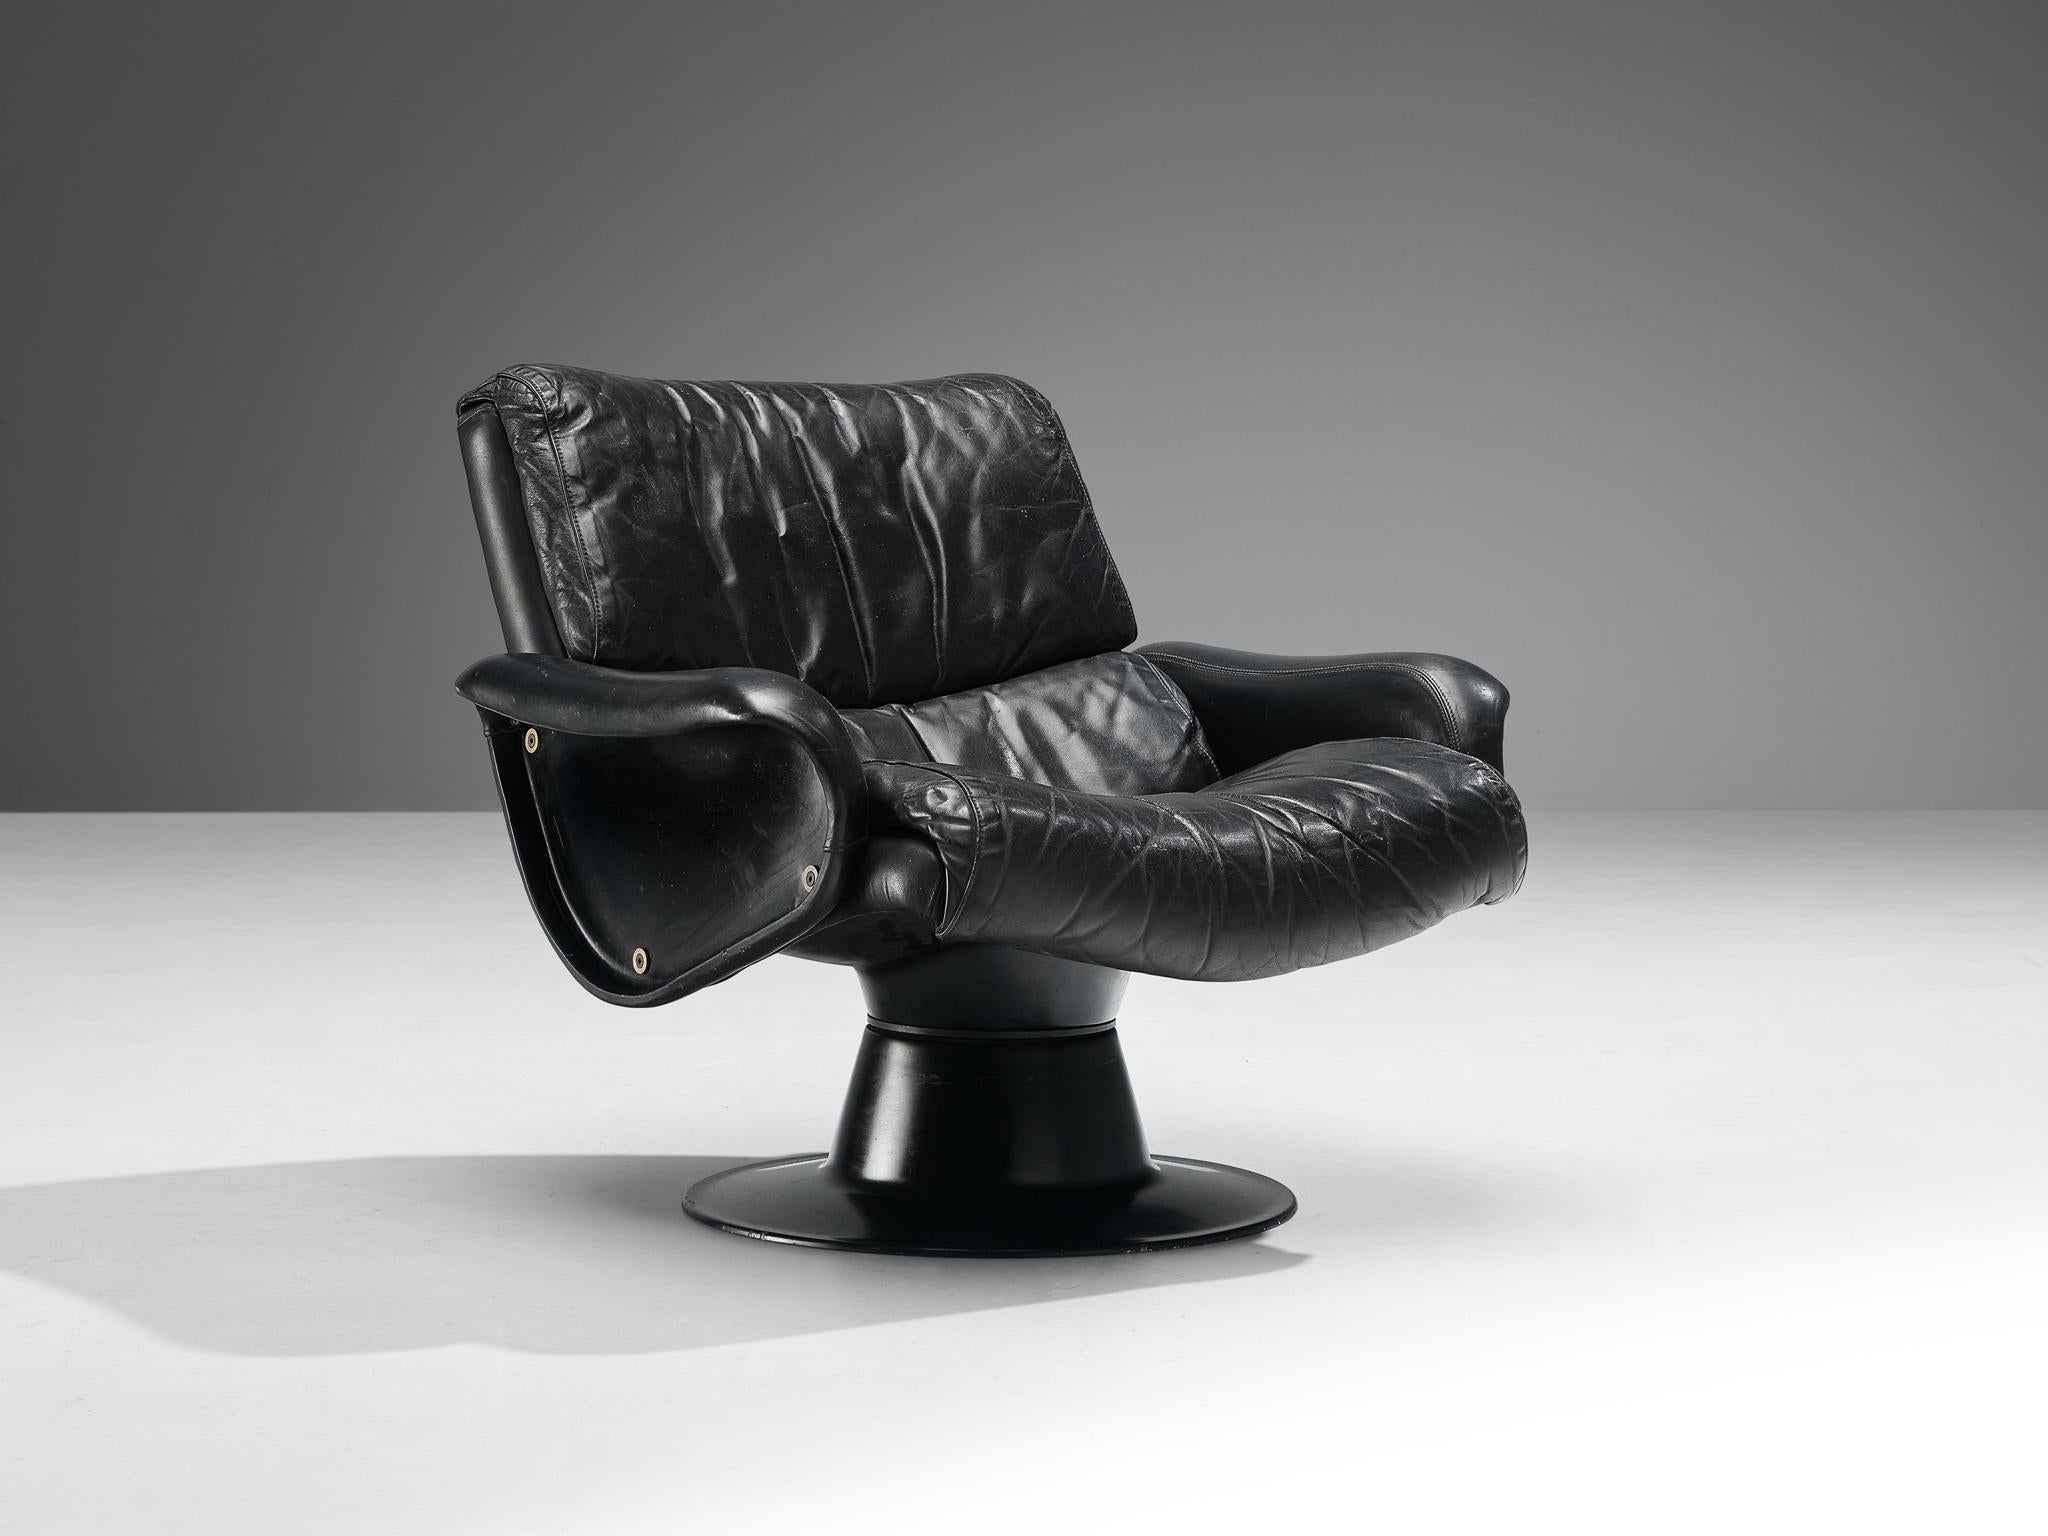 Yrjö Kukkapuro pour Haimi, chaise longue 'Saturnus', cuir, fibre de verre, Finlande, années 1960.

Superbe fauteuil en cuir noir patiné et fibre de verre du designer finlandais Yrjö Kukkapuro. Cette chaise de forme organique est fabriquée dans un